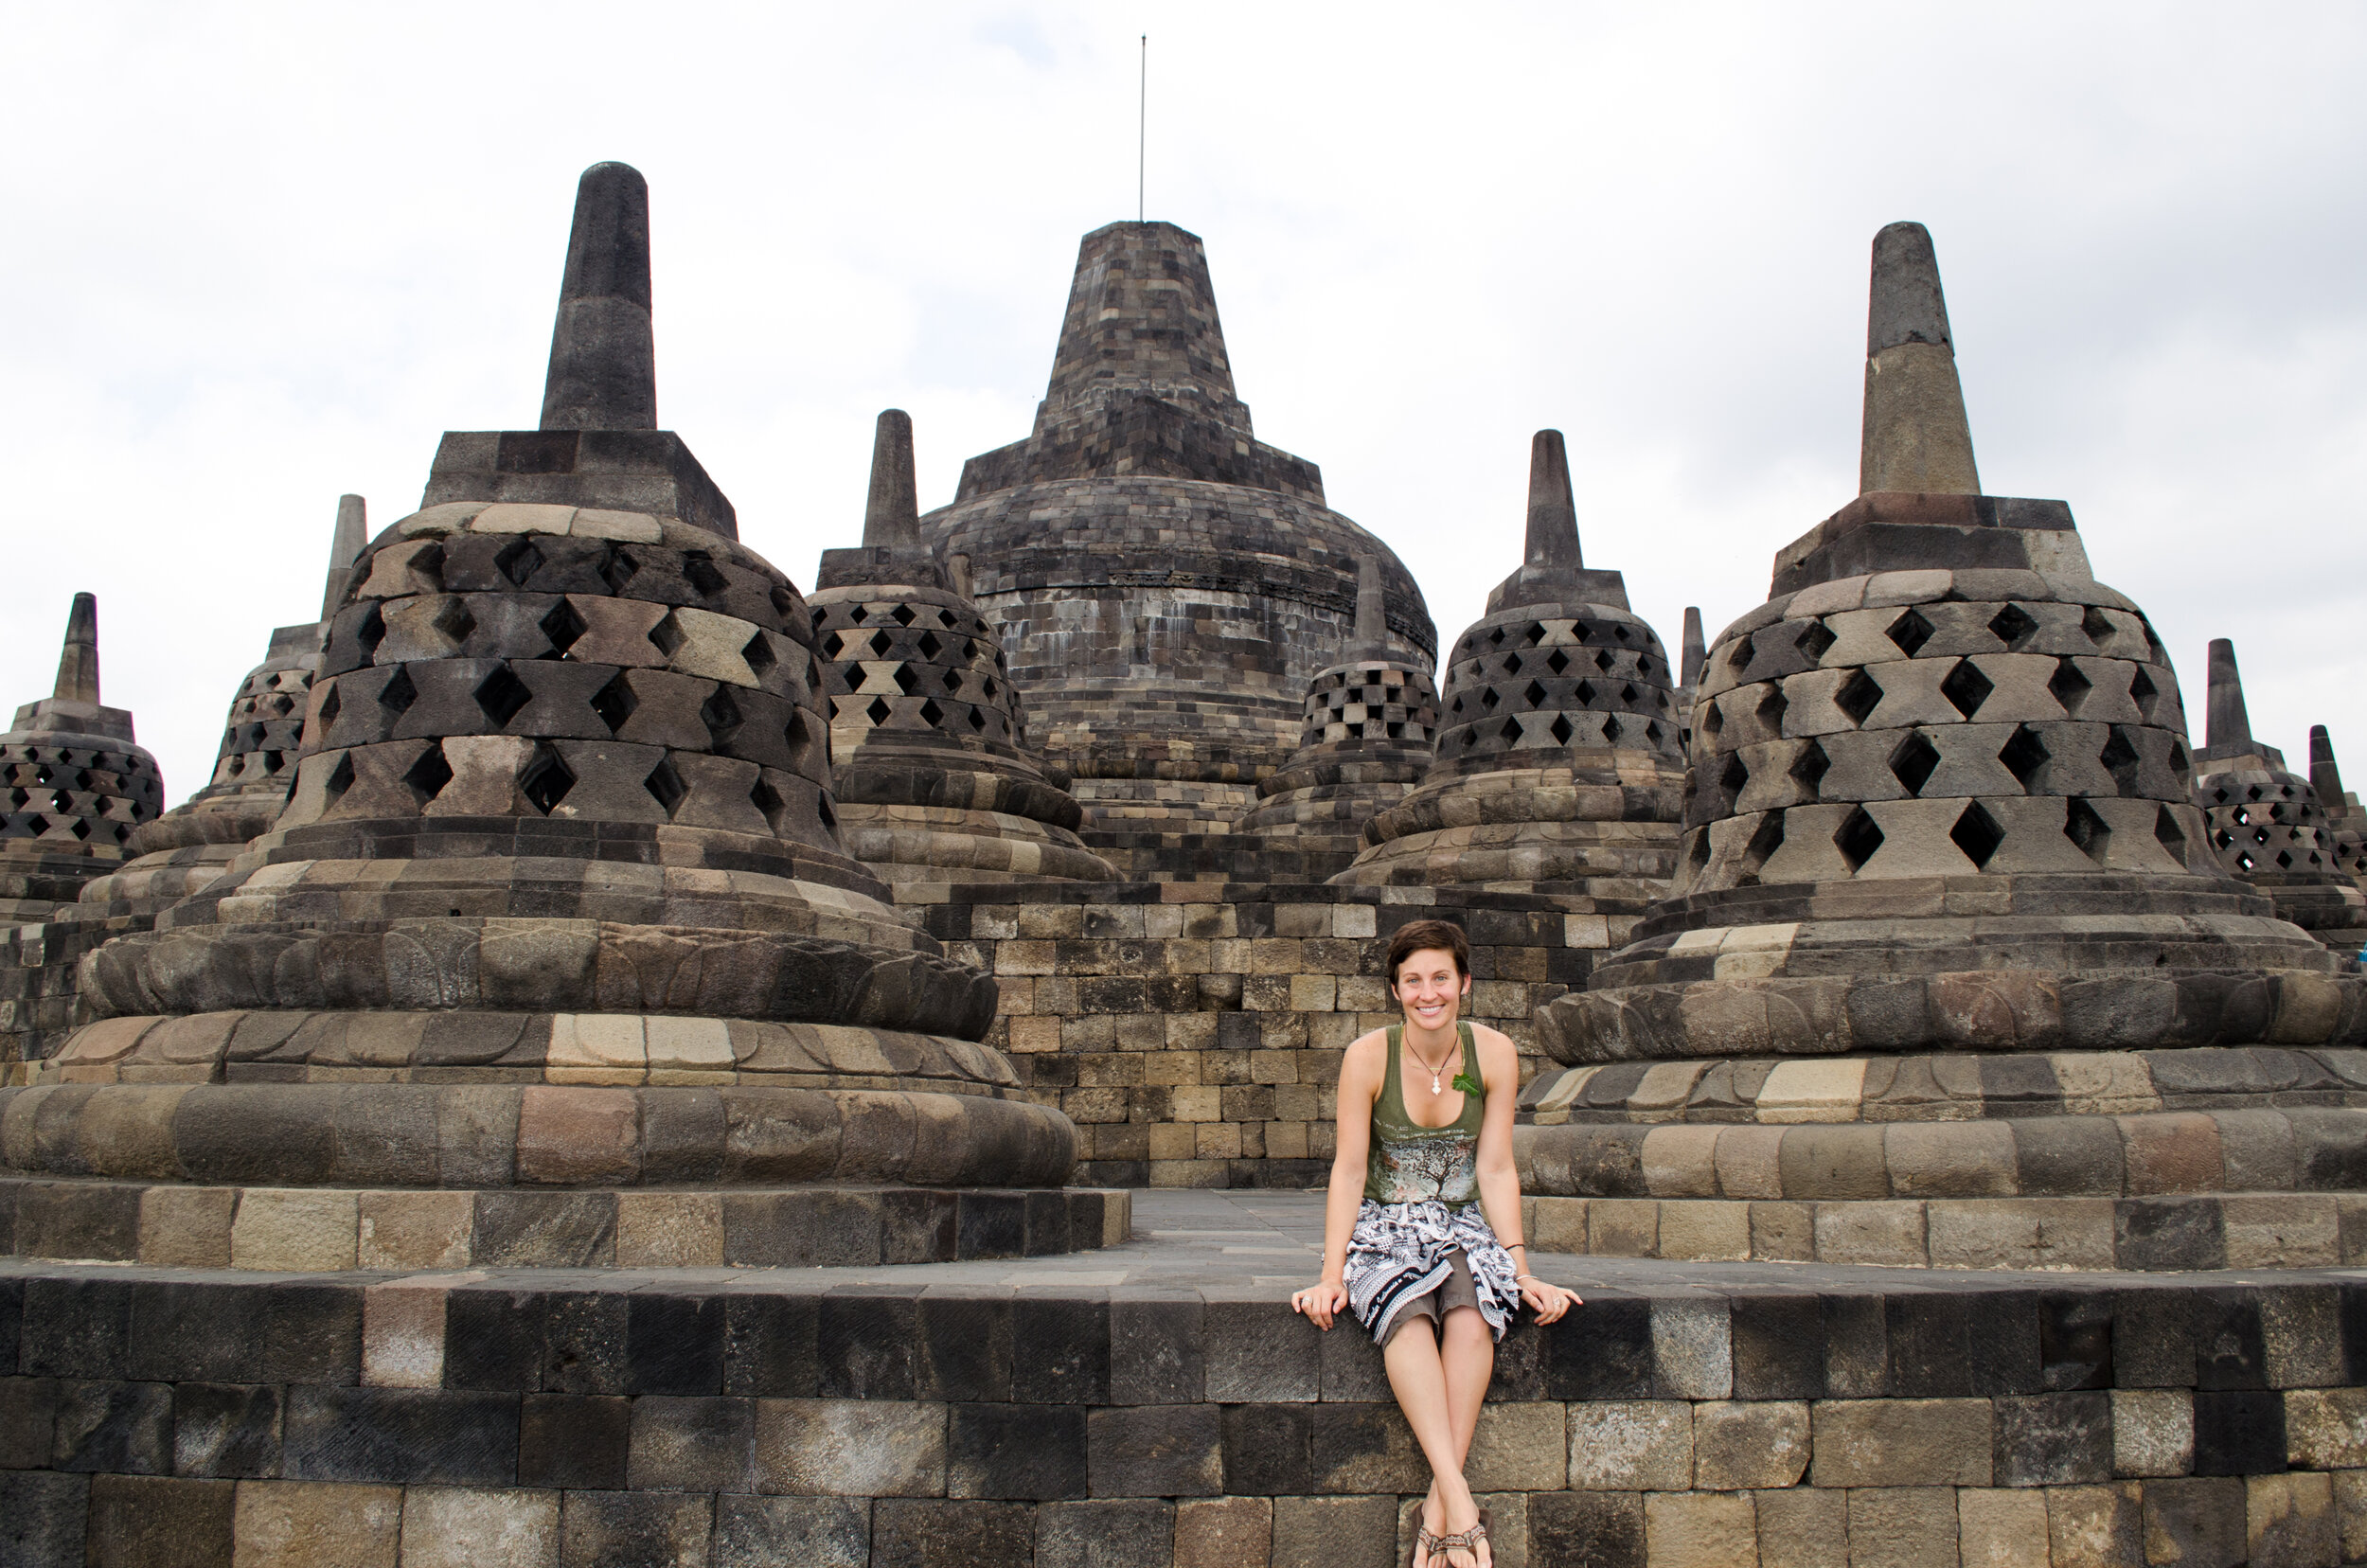 Borobudur Temple, Indonesia